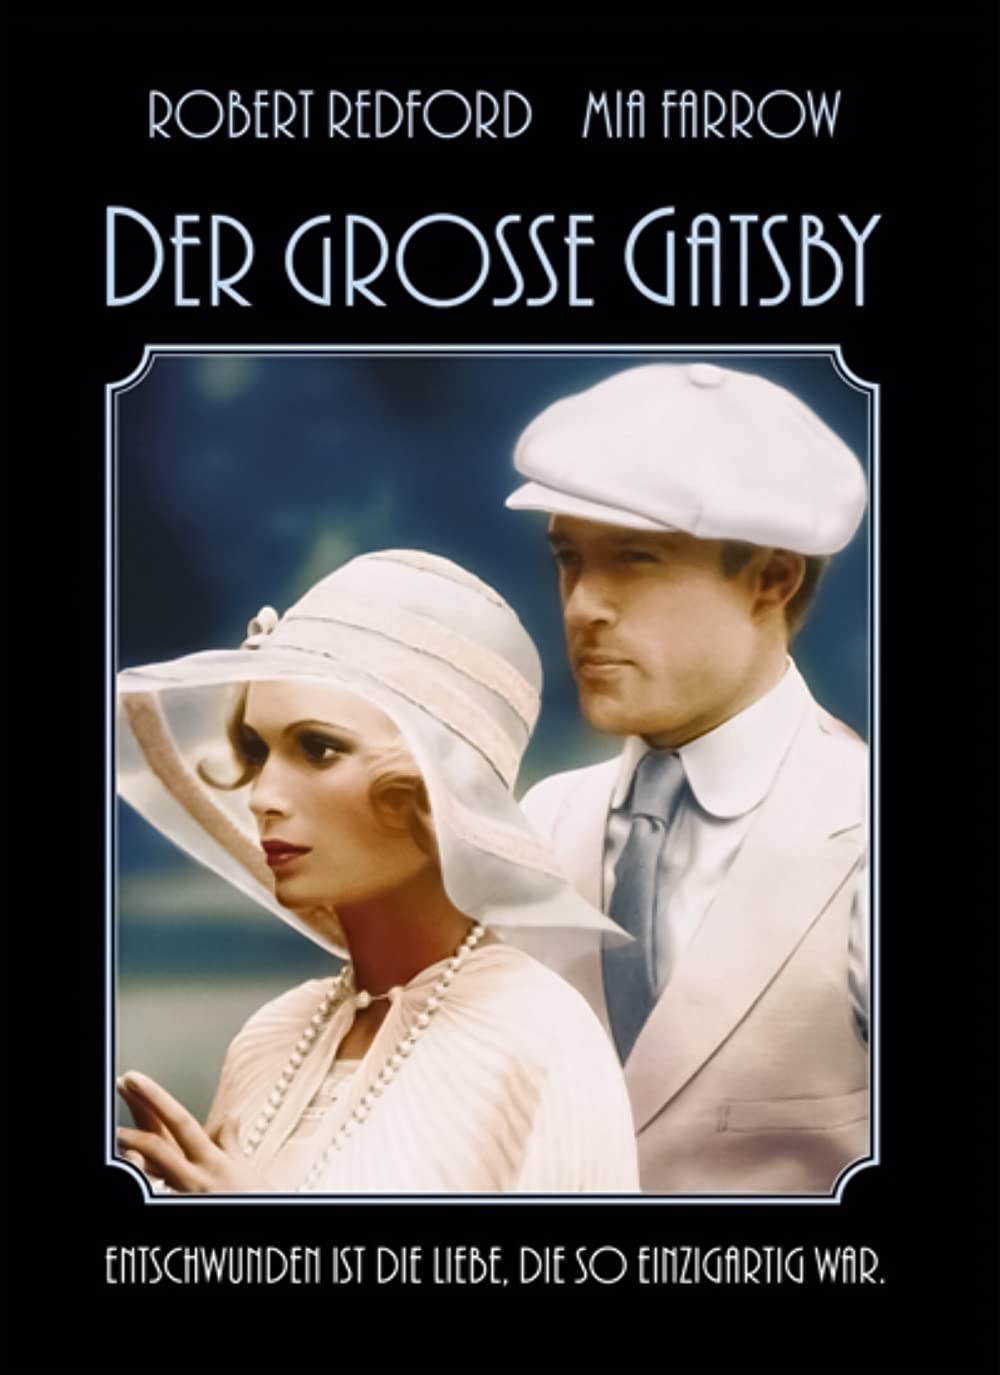 Filmbeschreibung zu Der große Gatsby (1974)